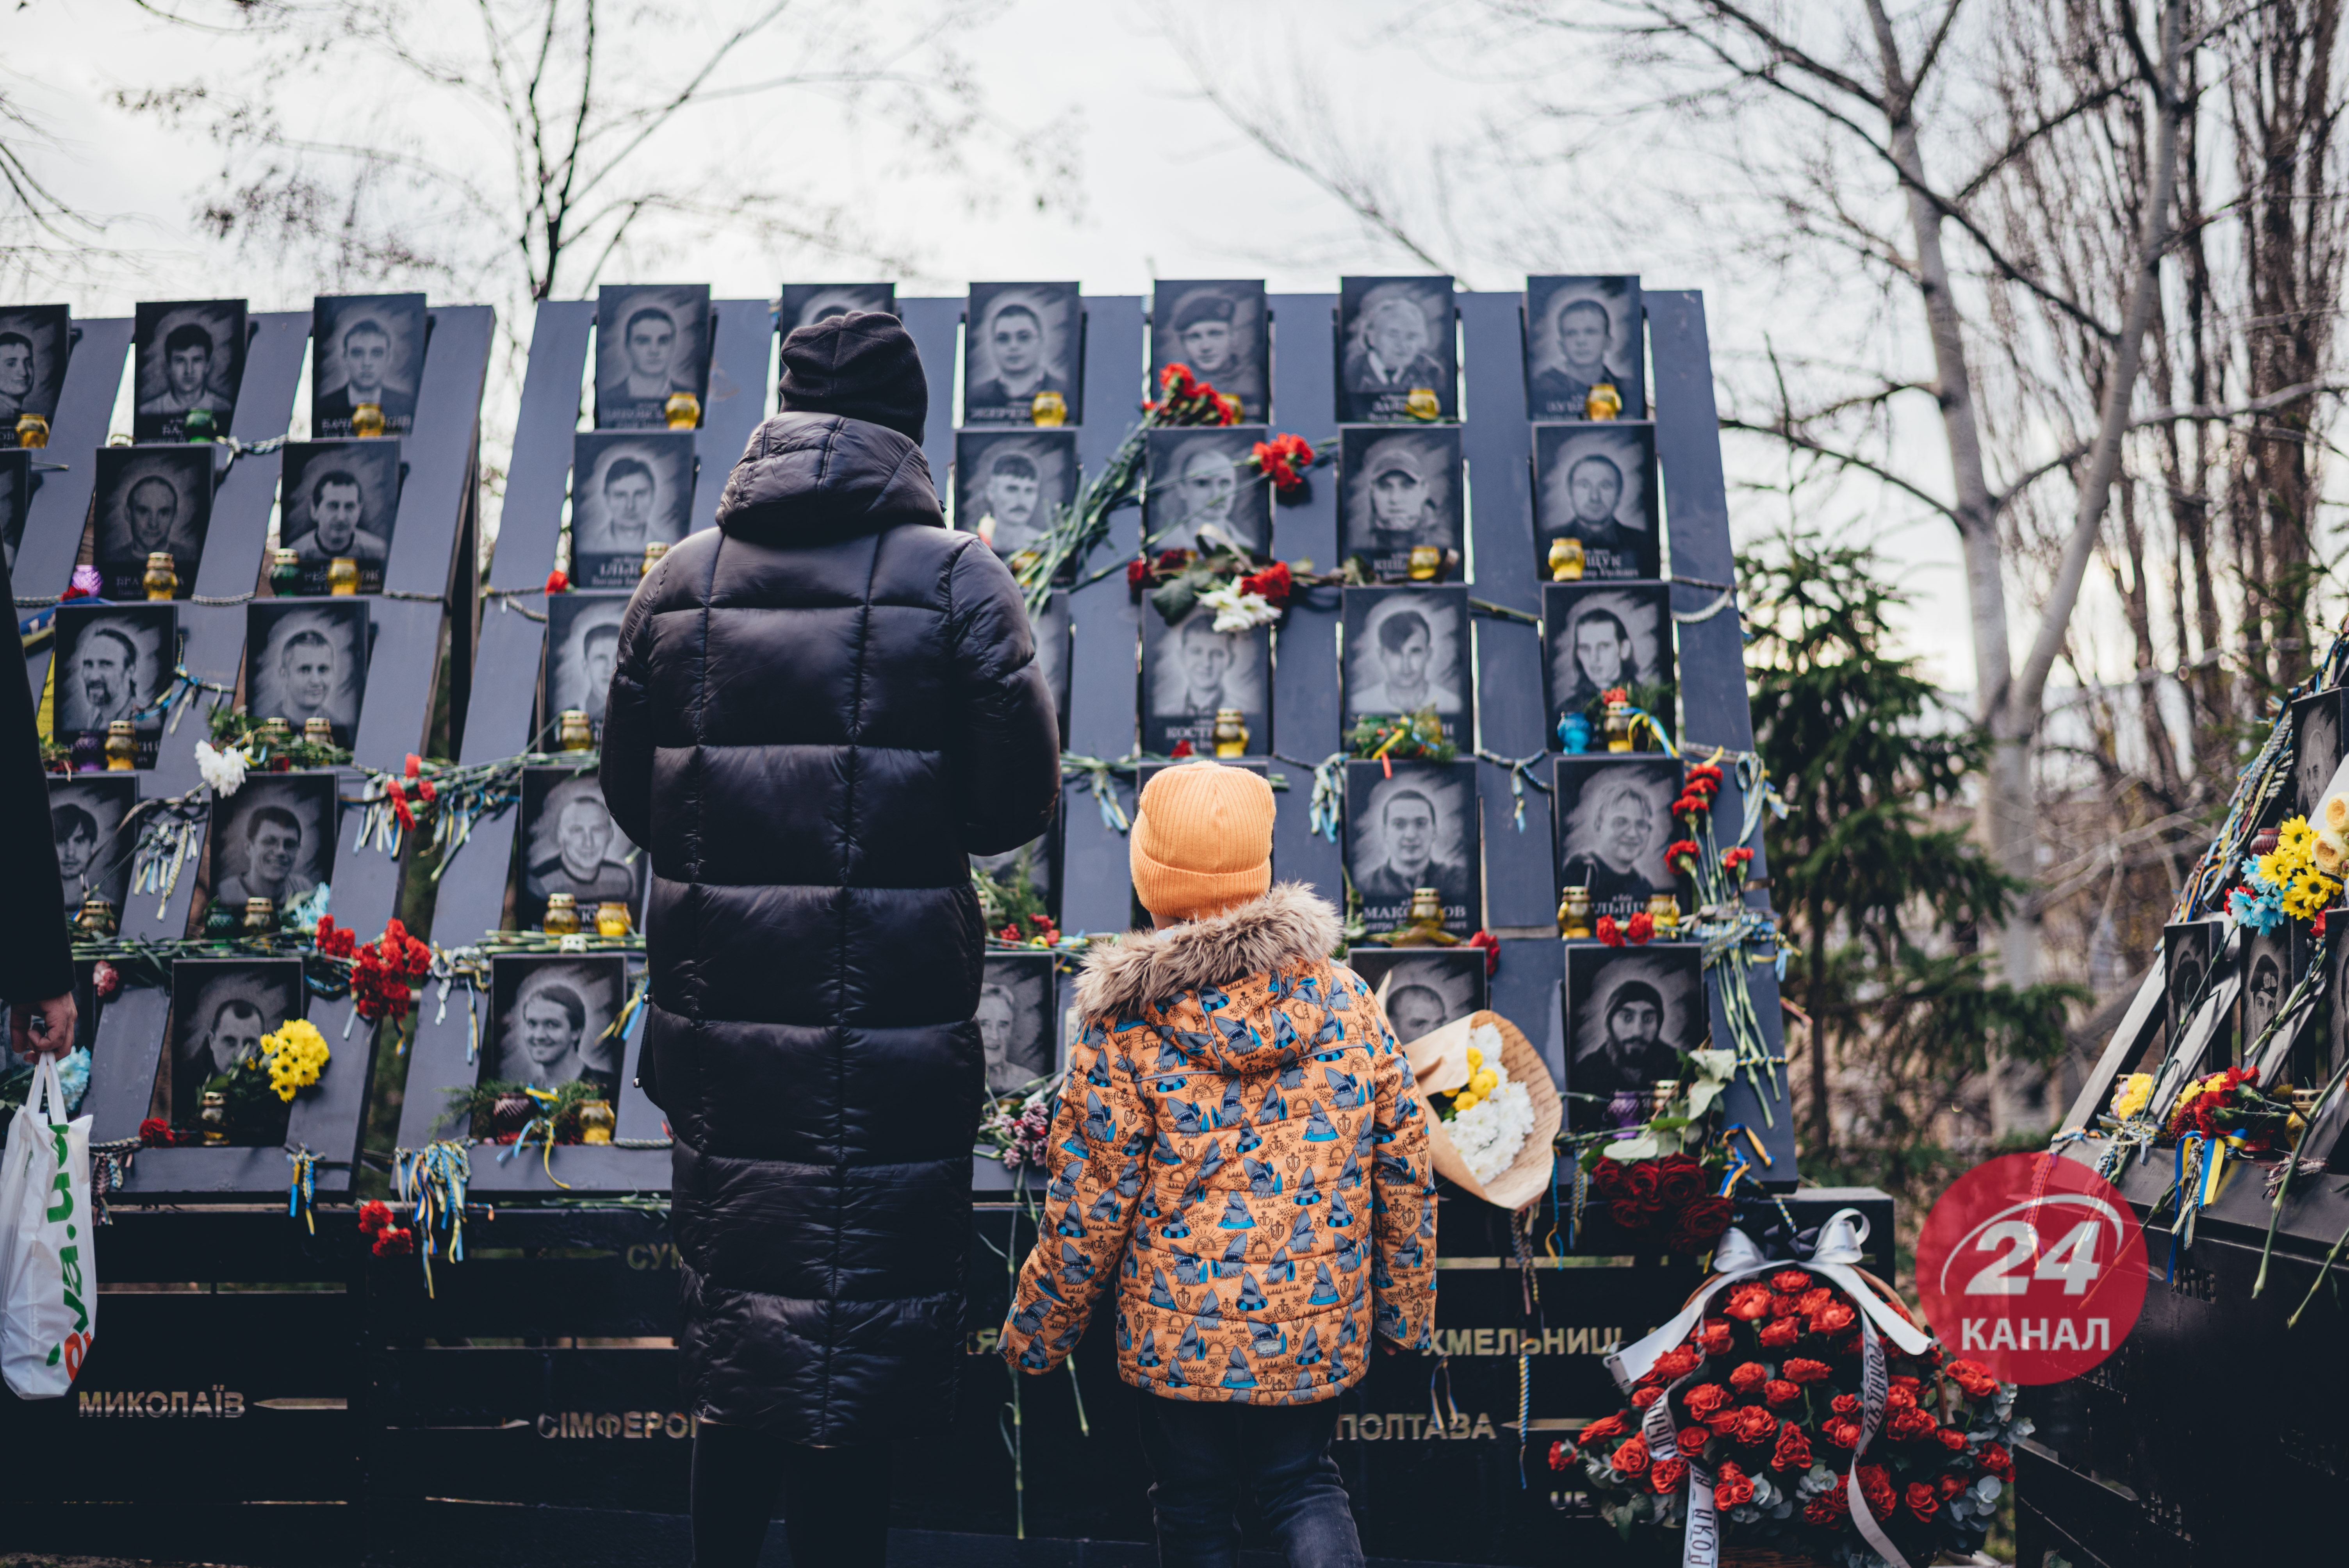 "Она всех нас сплотила": как в городах Украины отмечают годовщину Революции Достоинства